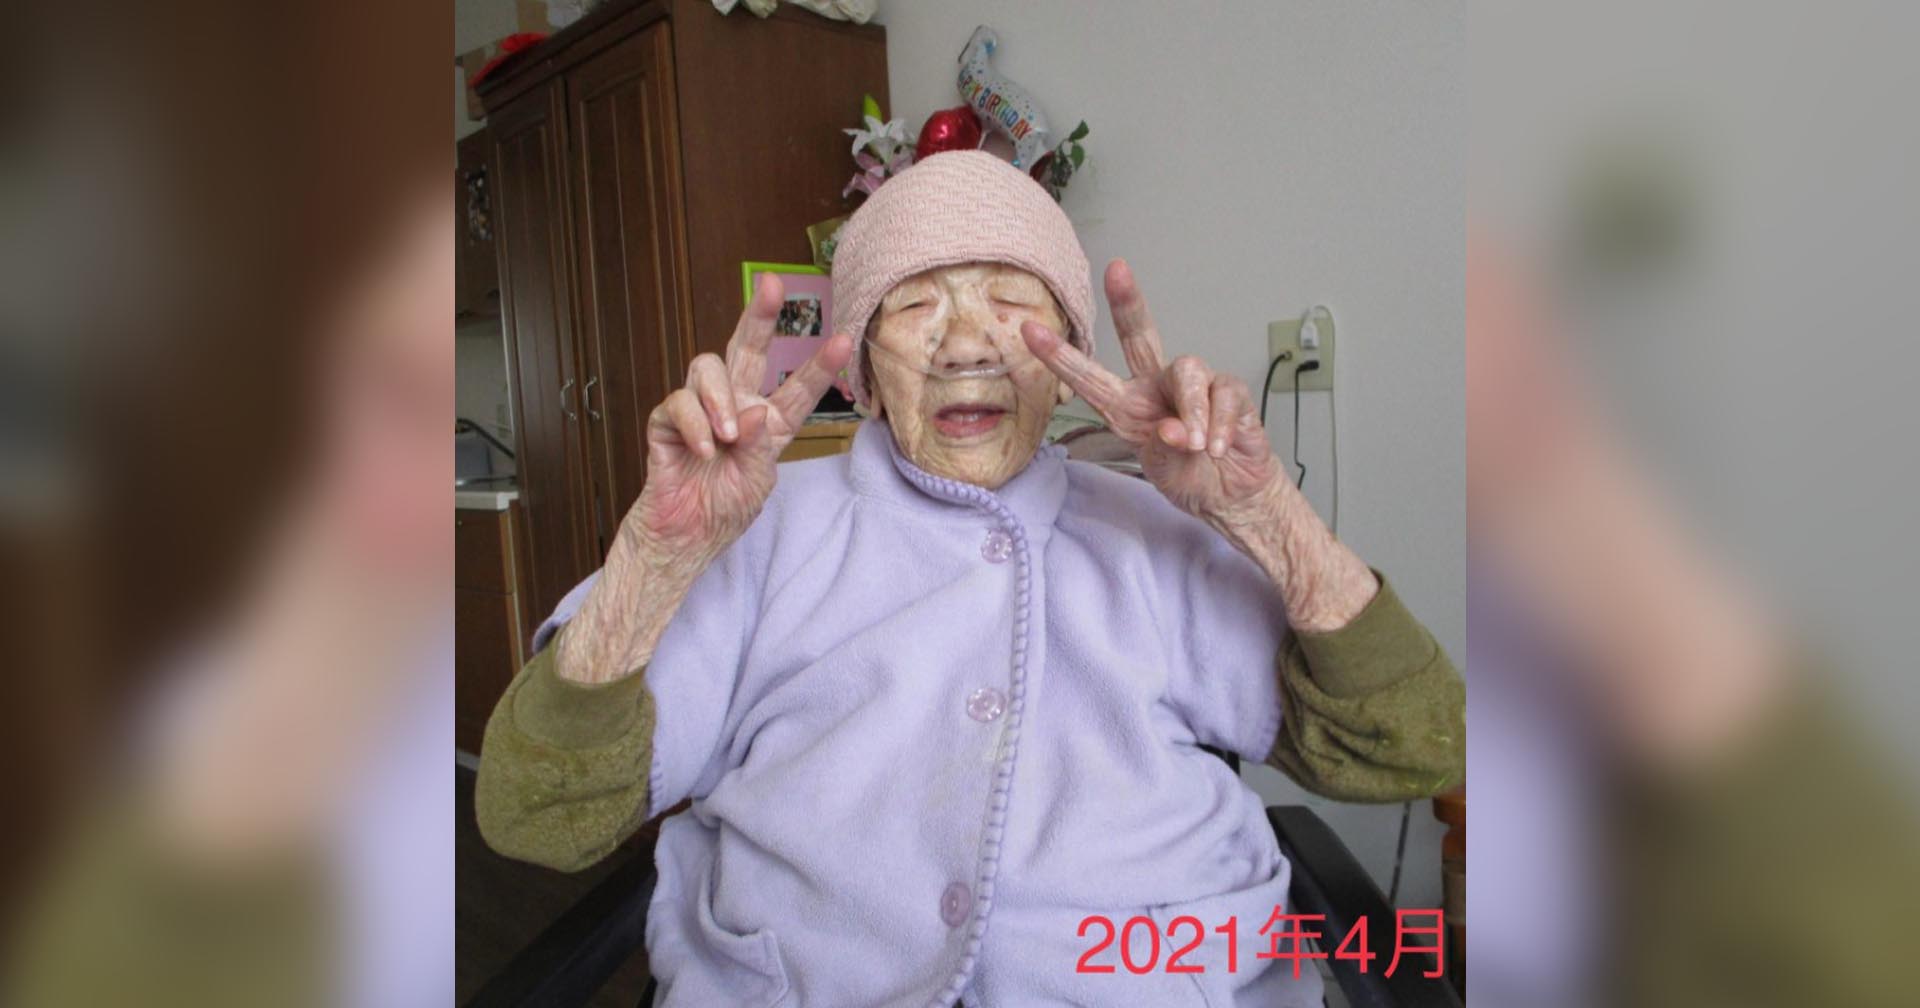 หญิงชราที่แก่ที่สุดในโลกฉลองวันเกิดอายุครบ 119 ปี พร้อมเผยอย่างอารมณ์ดีว่าเธอพร้อมฉลองวันเกิดปีต่อไปแล้ว